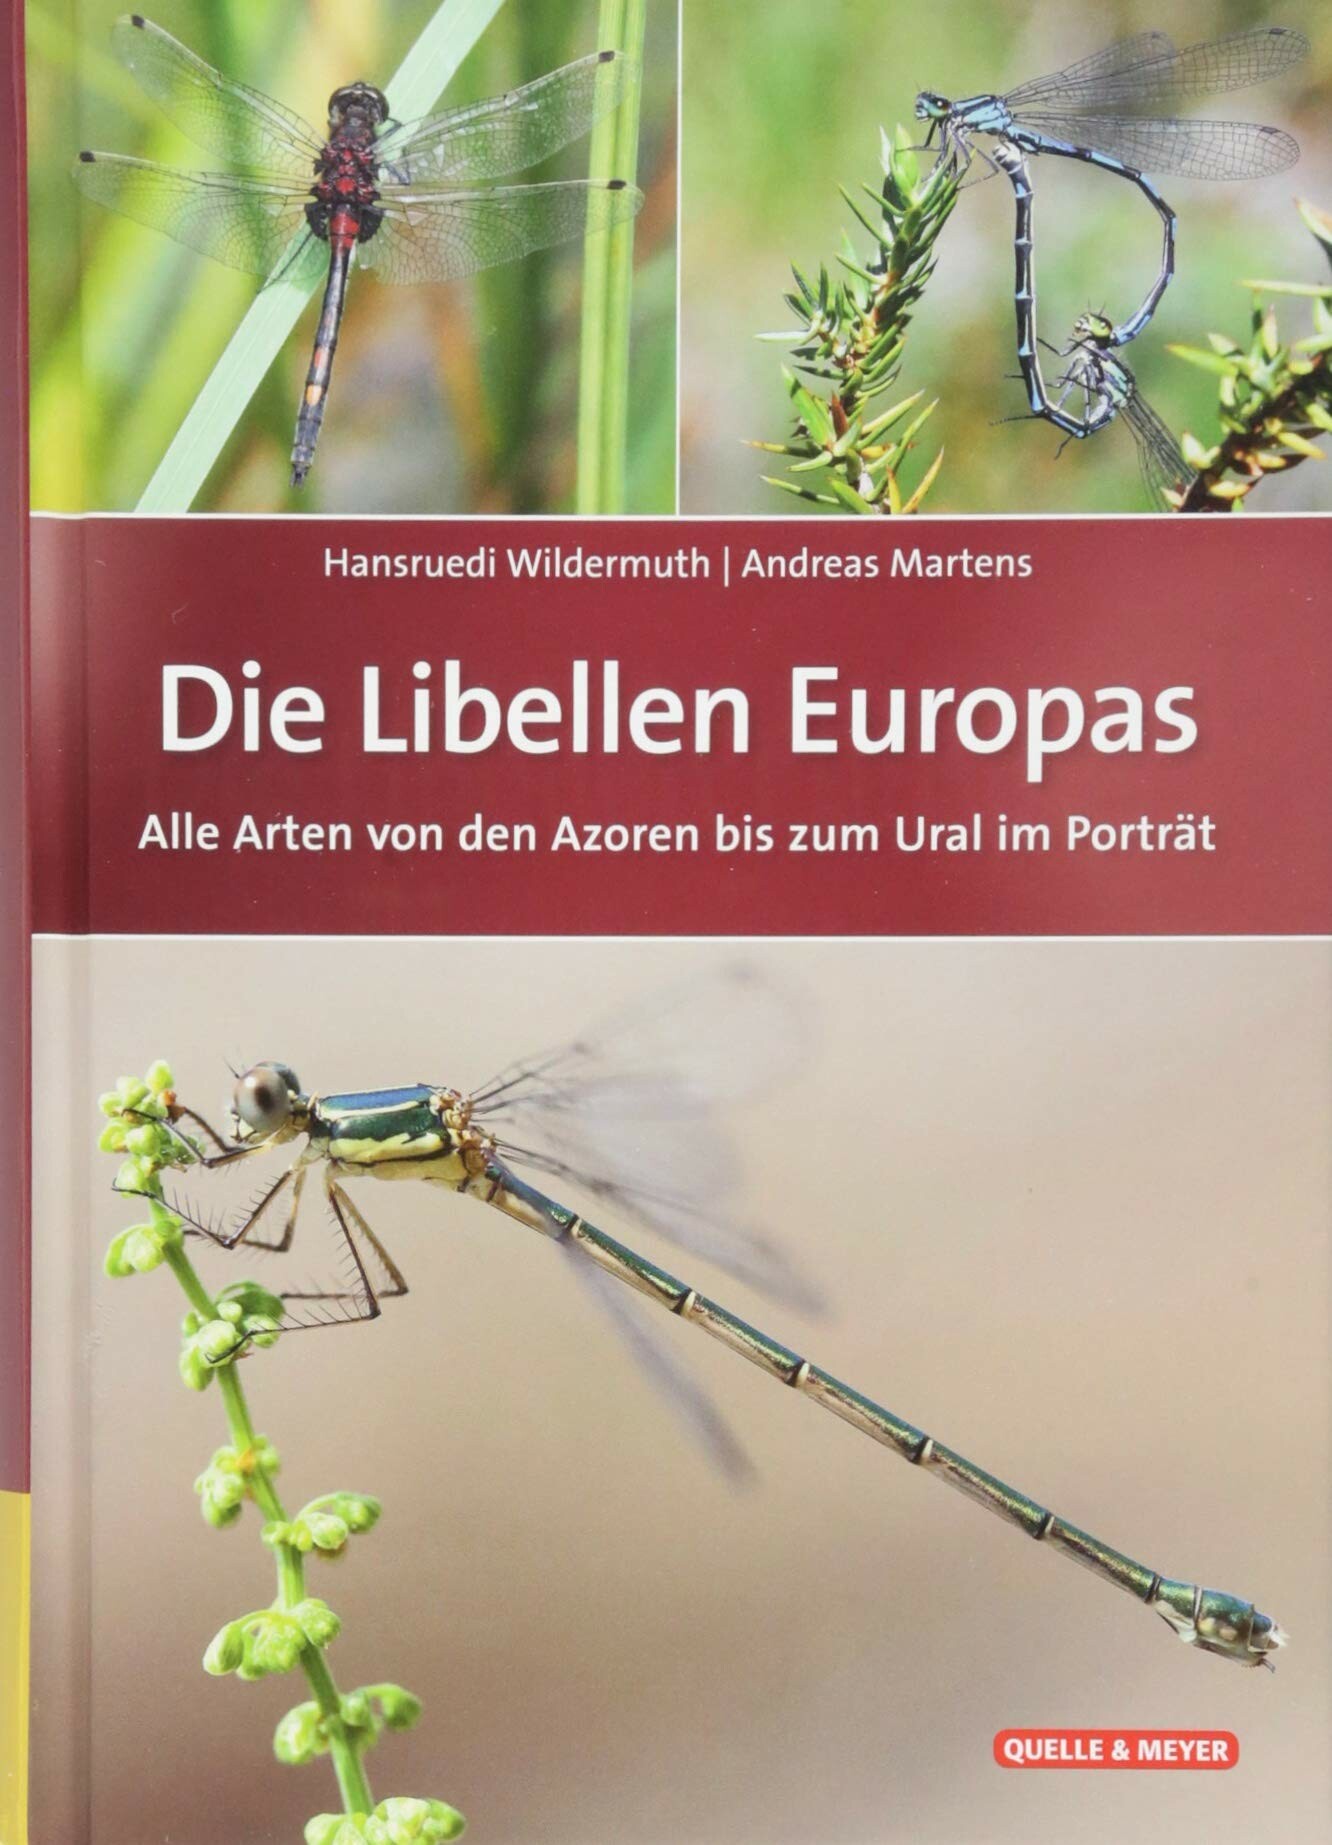 Hansruedi Wildermuth; Andreas Martens: Die Libellen Europas (Rippl-Rónai Múzeum CC BY-NC-ND)